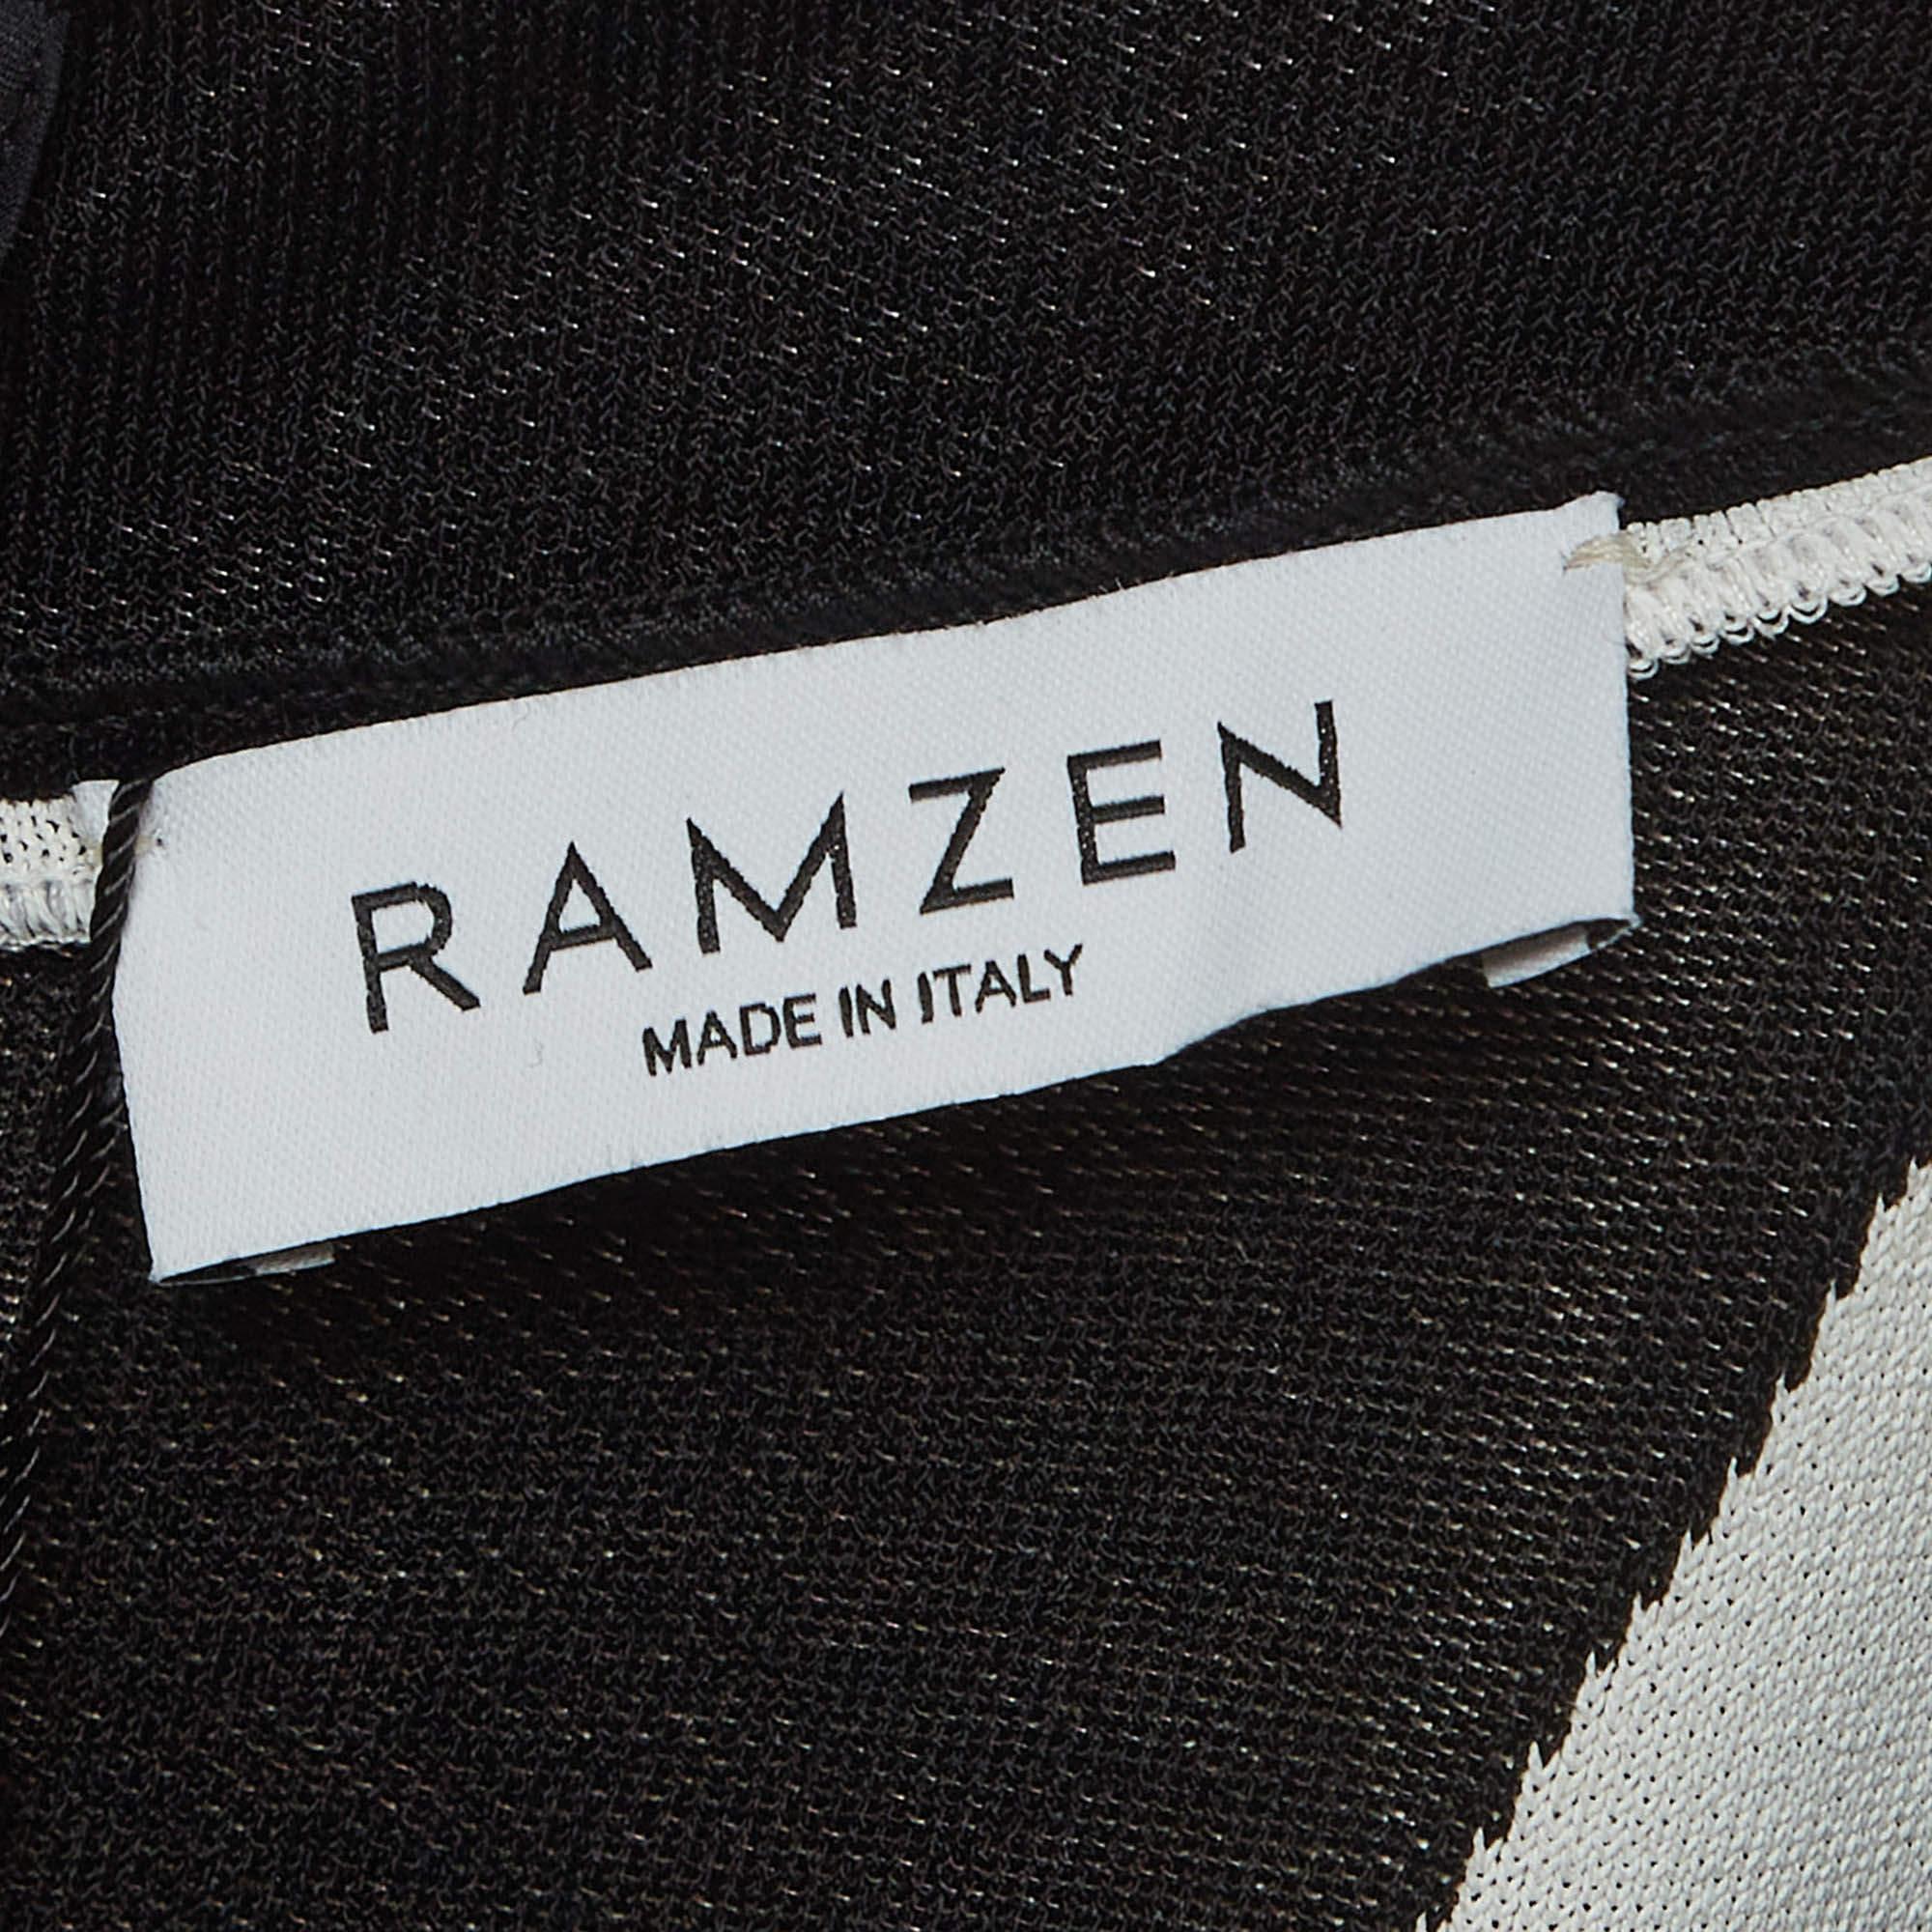 Ramzen Black/White Striped Knit Maxi Dress S In Excellent Condition For Sale In Dubai, Al Qouz 2